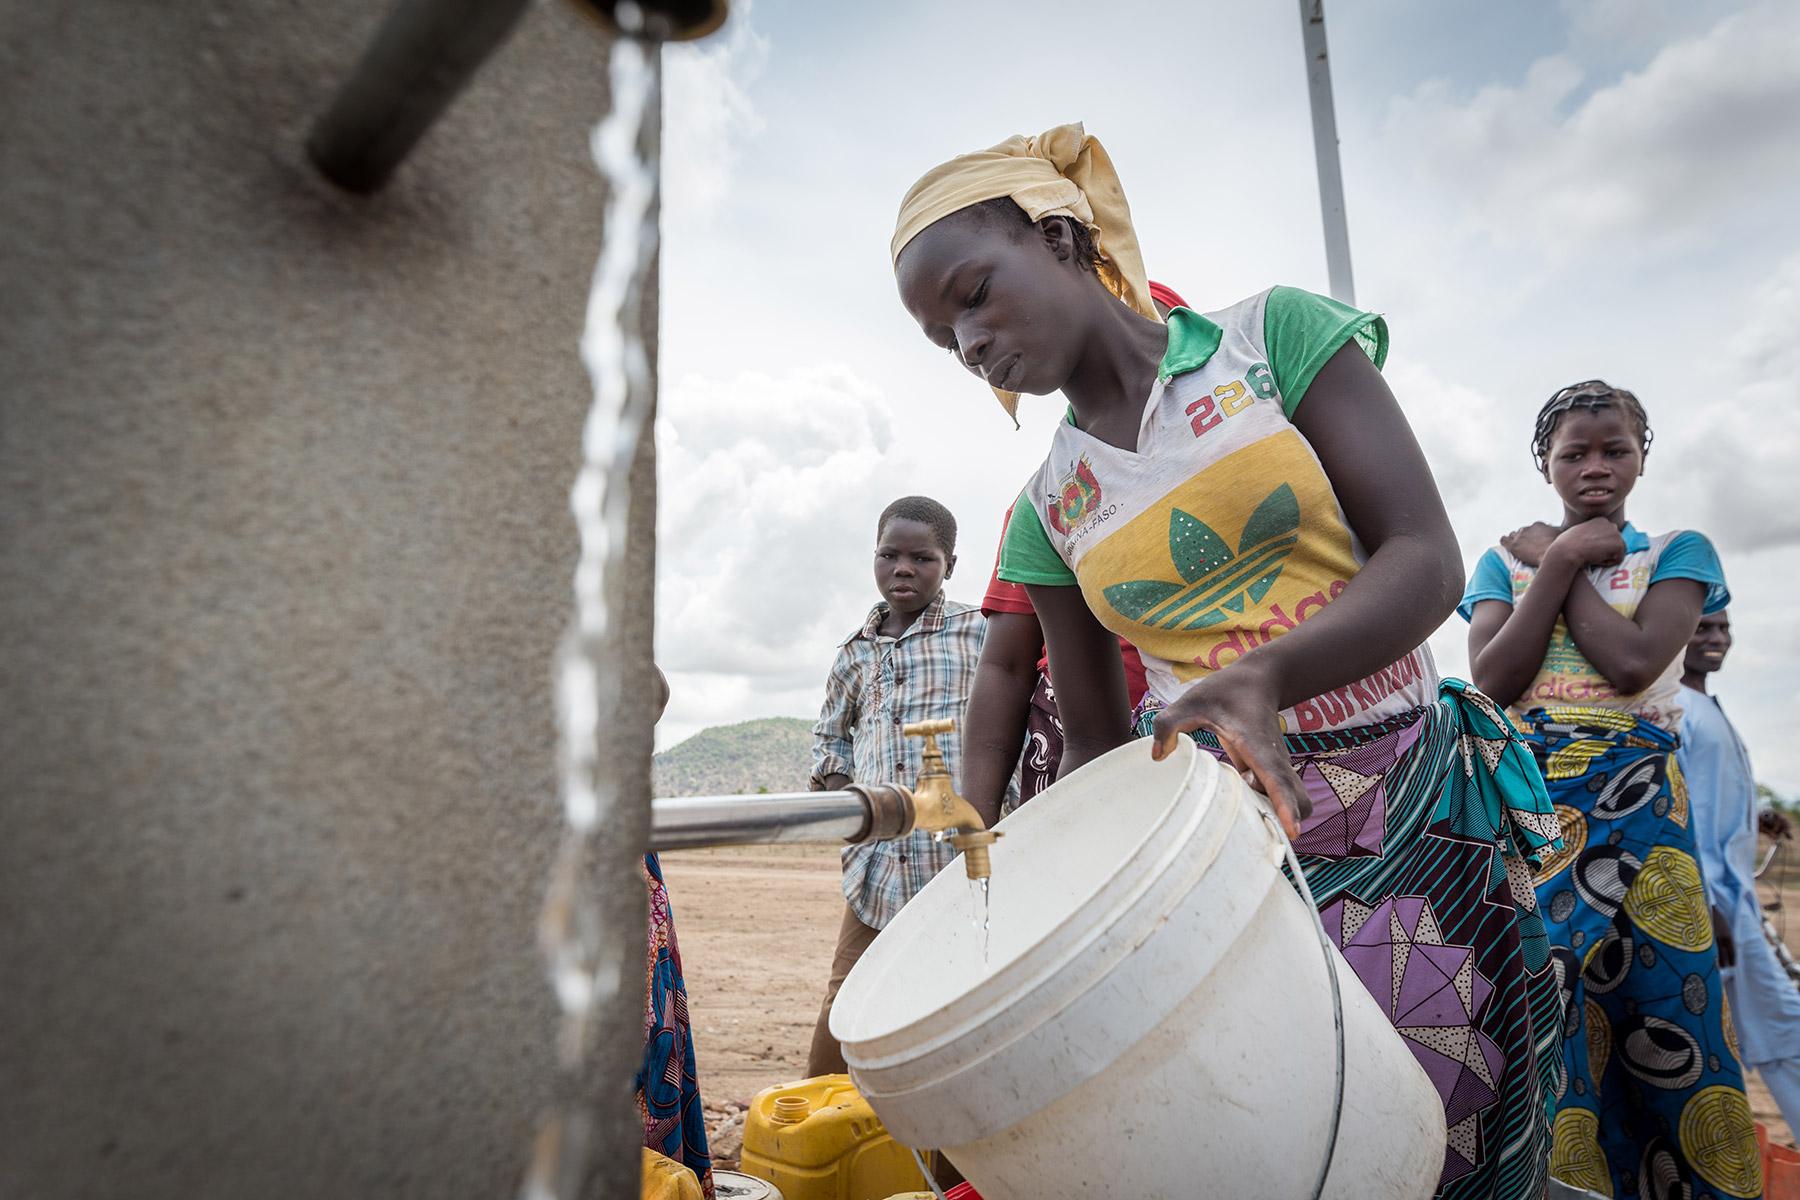 Für die schwächsten und gefährdetsten Bevölkerungsgruppen ist der Zugang zu ausreichend sauberem Trinkwasser in Zeiten des Klimawandels, aber auch in der Corona-Pandemie von zentraler Bedeutung. Eine junge Frau steht im Flüchtlingslager Minawao an, um ihren Eimer an einer der gemeinschaftlichen Wasserzapfstellen mit Wasser zu füllen. In dem Flüchtlingslager für nigerianische Flüchtlinge im äußersten Norden des Kamerun leben derzeit rund 58.000 Flüchtlinge aus Nordostnigeria. Unterstützung erhalten die Flüch